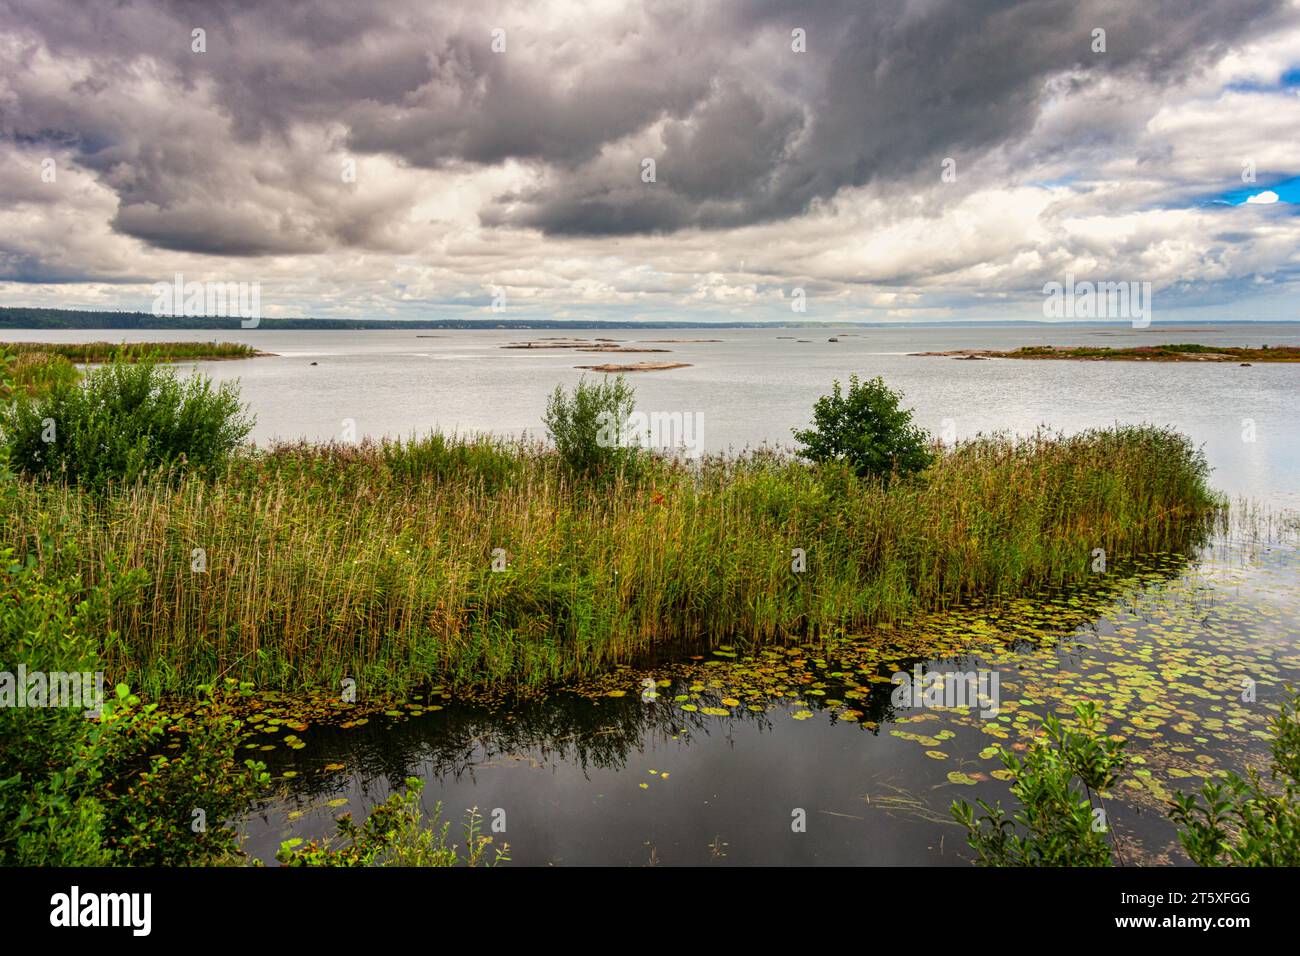 Schwedens größter See mit Inselchen, Sümpfen, Klippen und Stränden, der auch Angeln, Schwimmen und Wandern bietet. Vänersborg, Vänersee Stockfoto